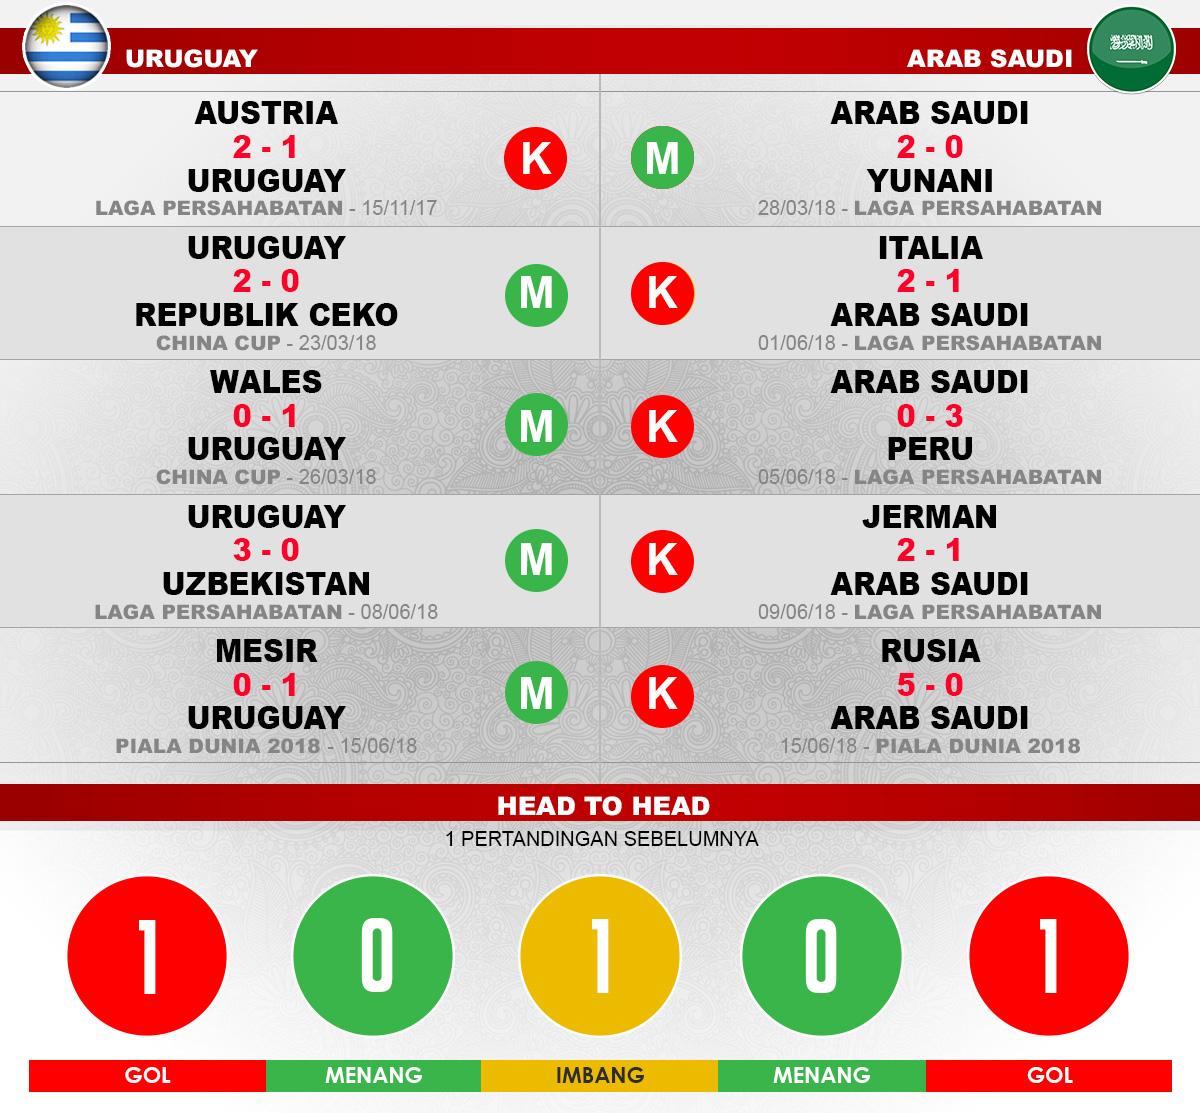 Uruguay vs Arab Saudi Copyright: Grafis: HeruFirmansyah/Indosport.com